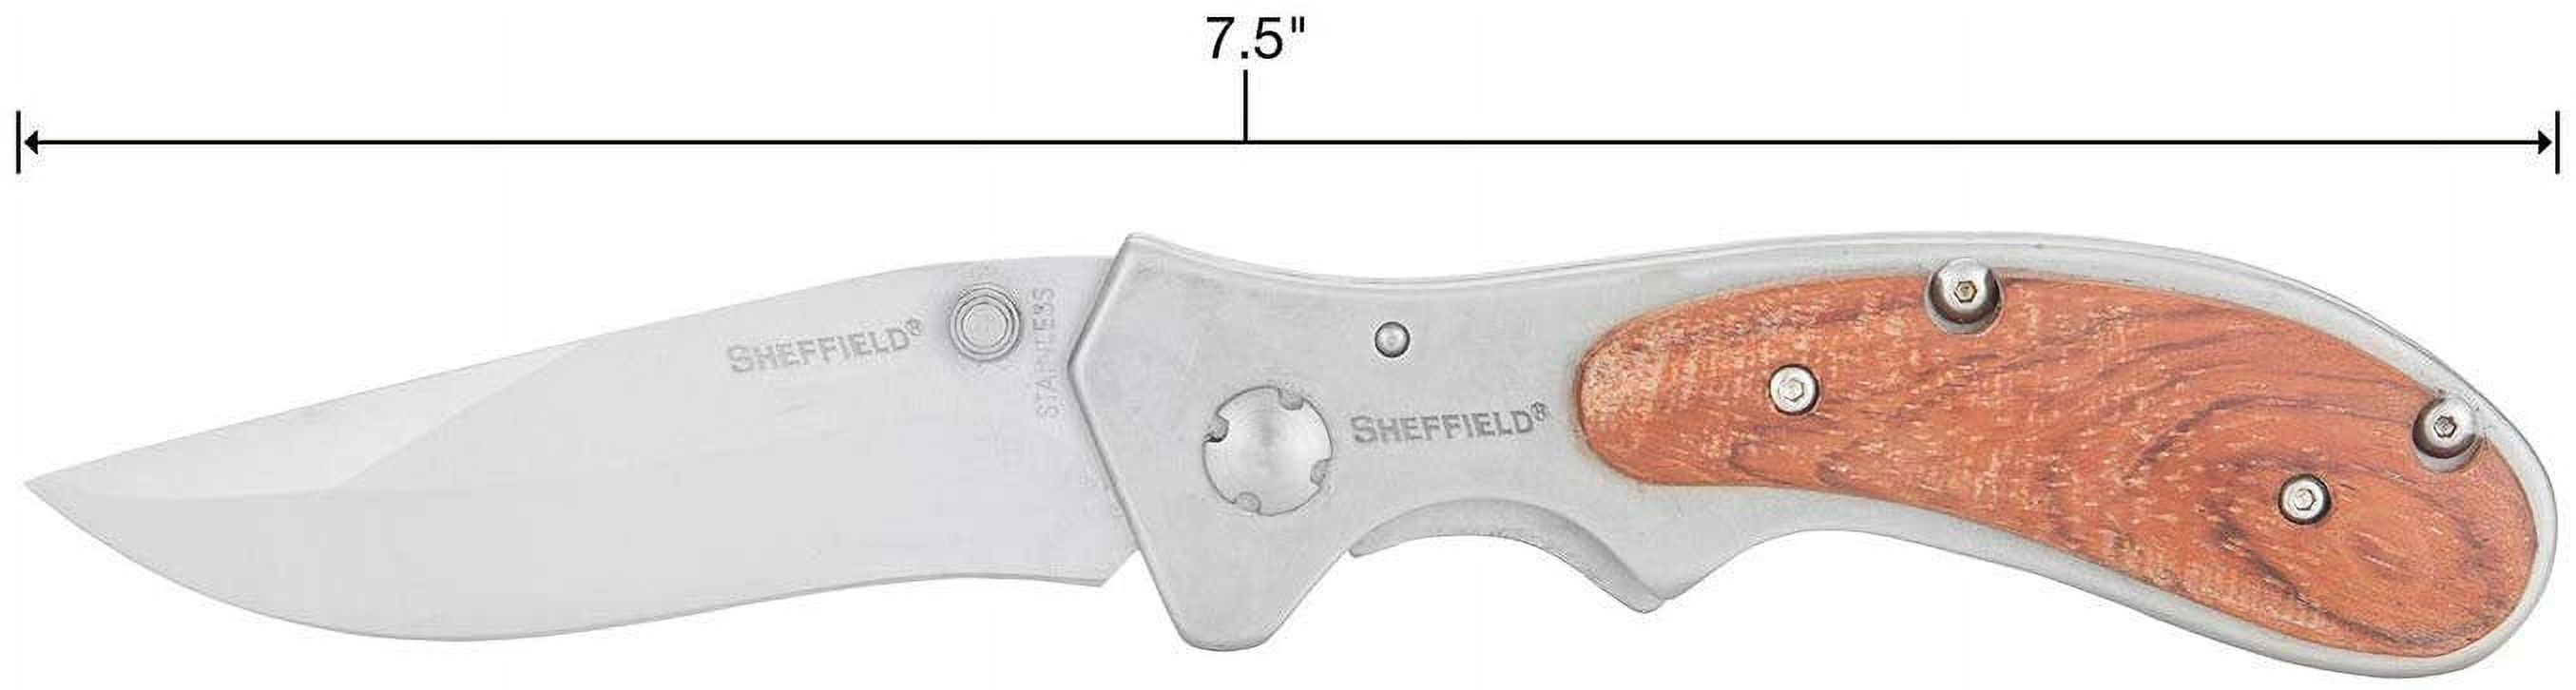 Sheffield 12705 Boreal Folding Pocket Knife - image 3 of 6